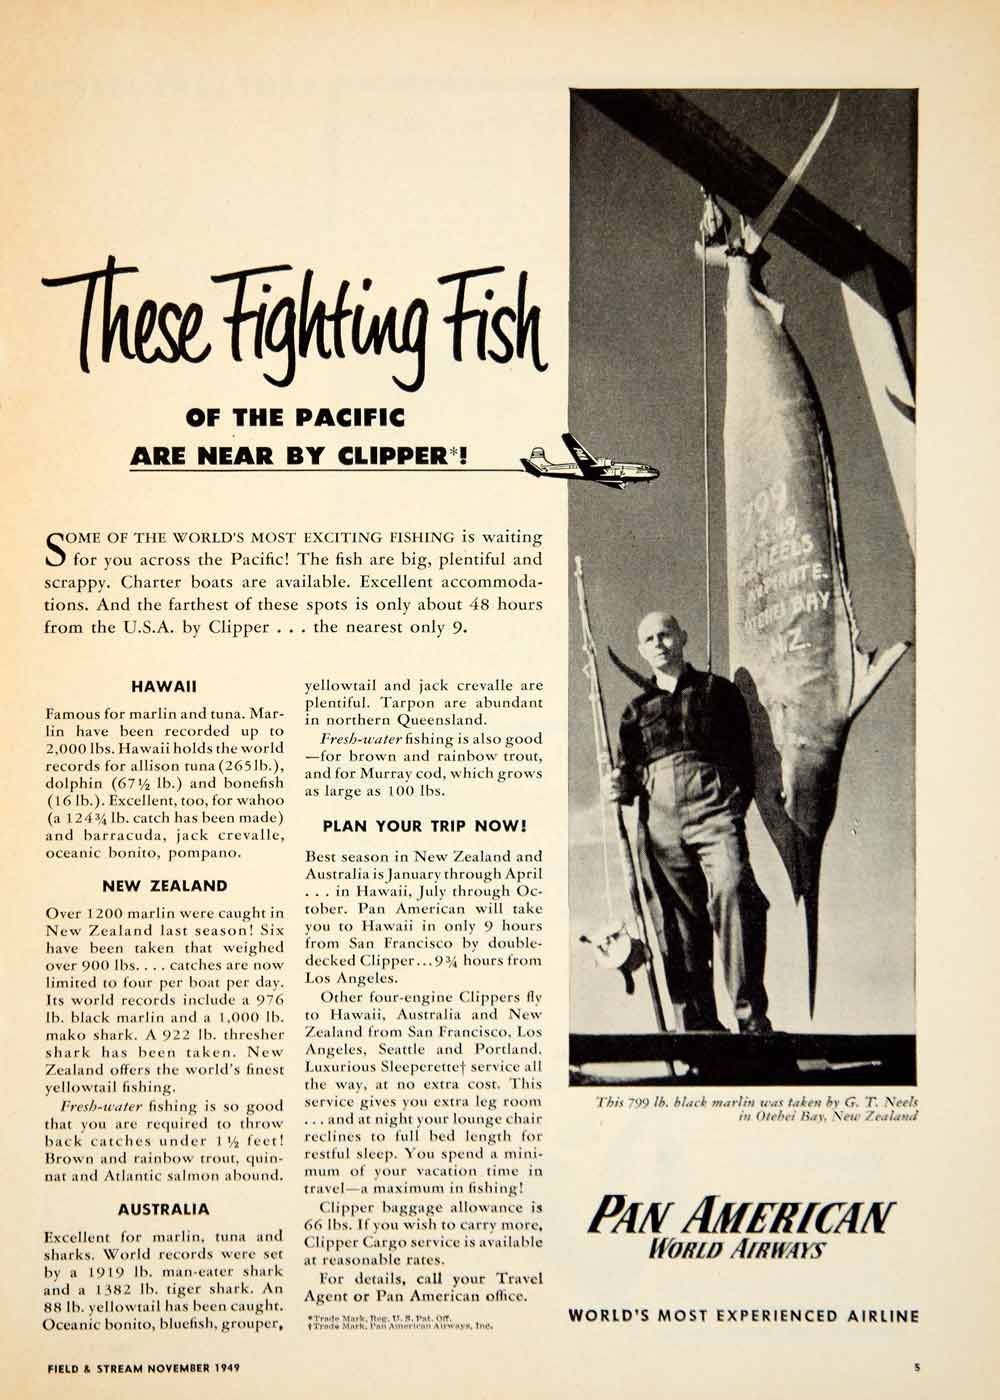 1949 Ad Pan American World Airways Airline GT Neels Black Marlin Fishing YFS2